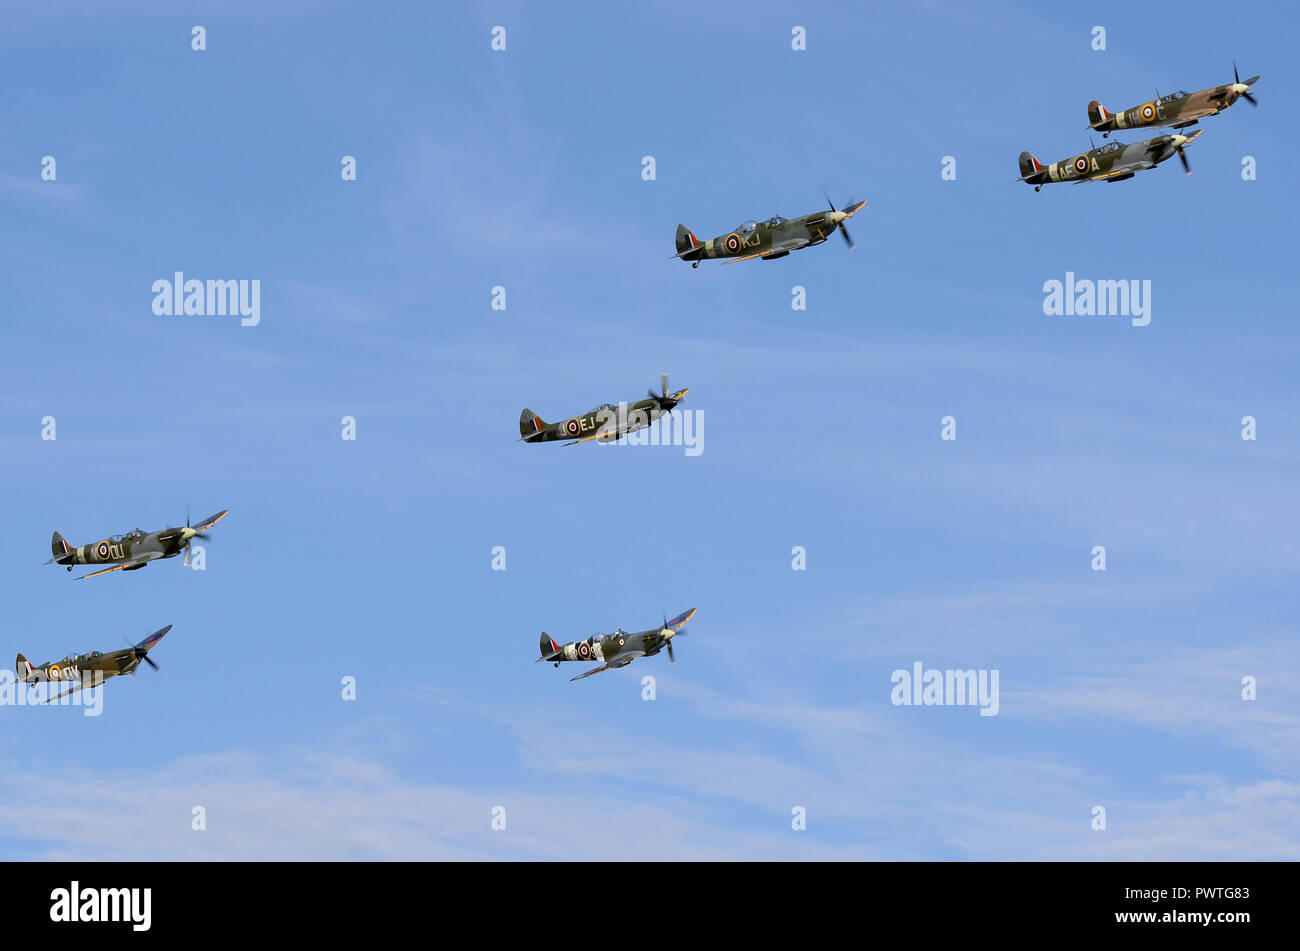 Vol, escadron, groupe de Spitfires. Avions de chasse Supermarine Spitfire de la Seconde Guerre mondiale volant ensemble. RAF, avion de guerre de la Royal Air Force. Ciel bleu Banque D'Images